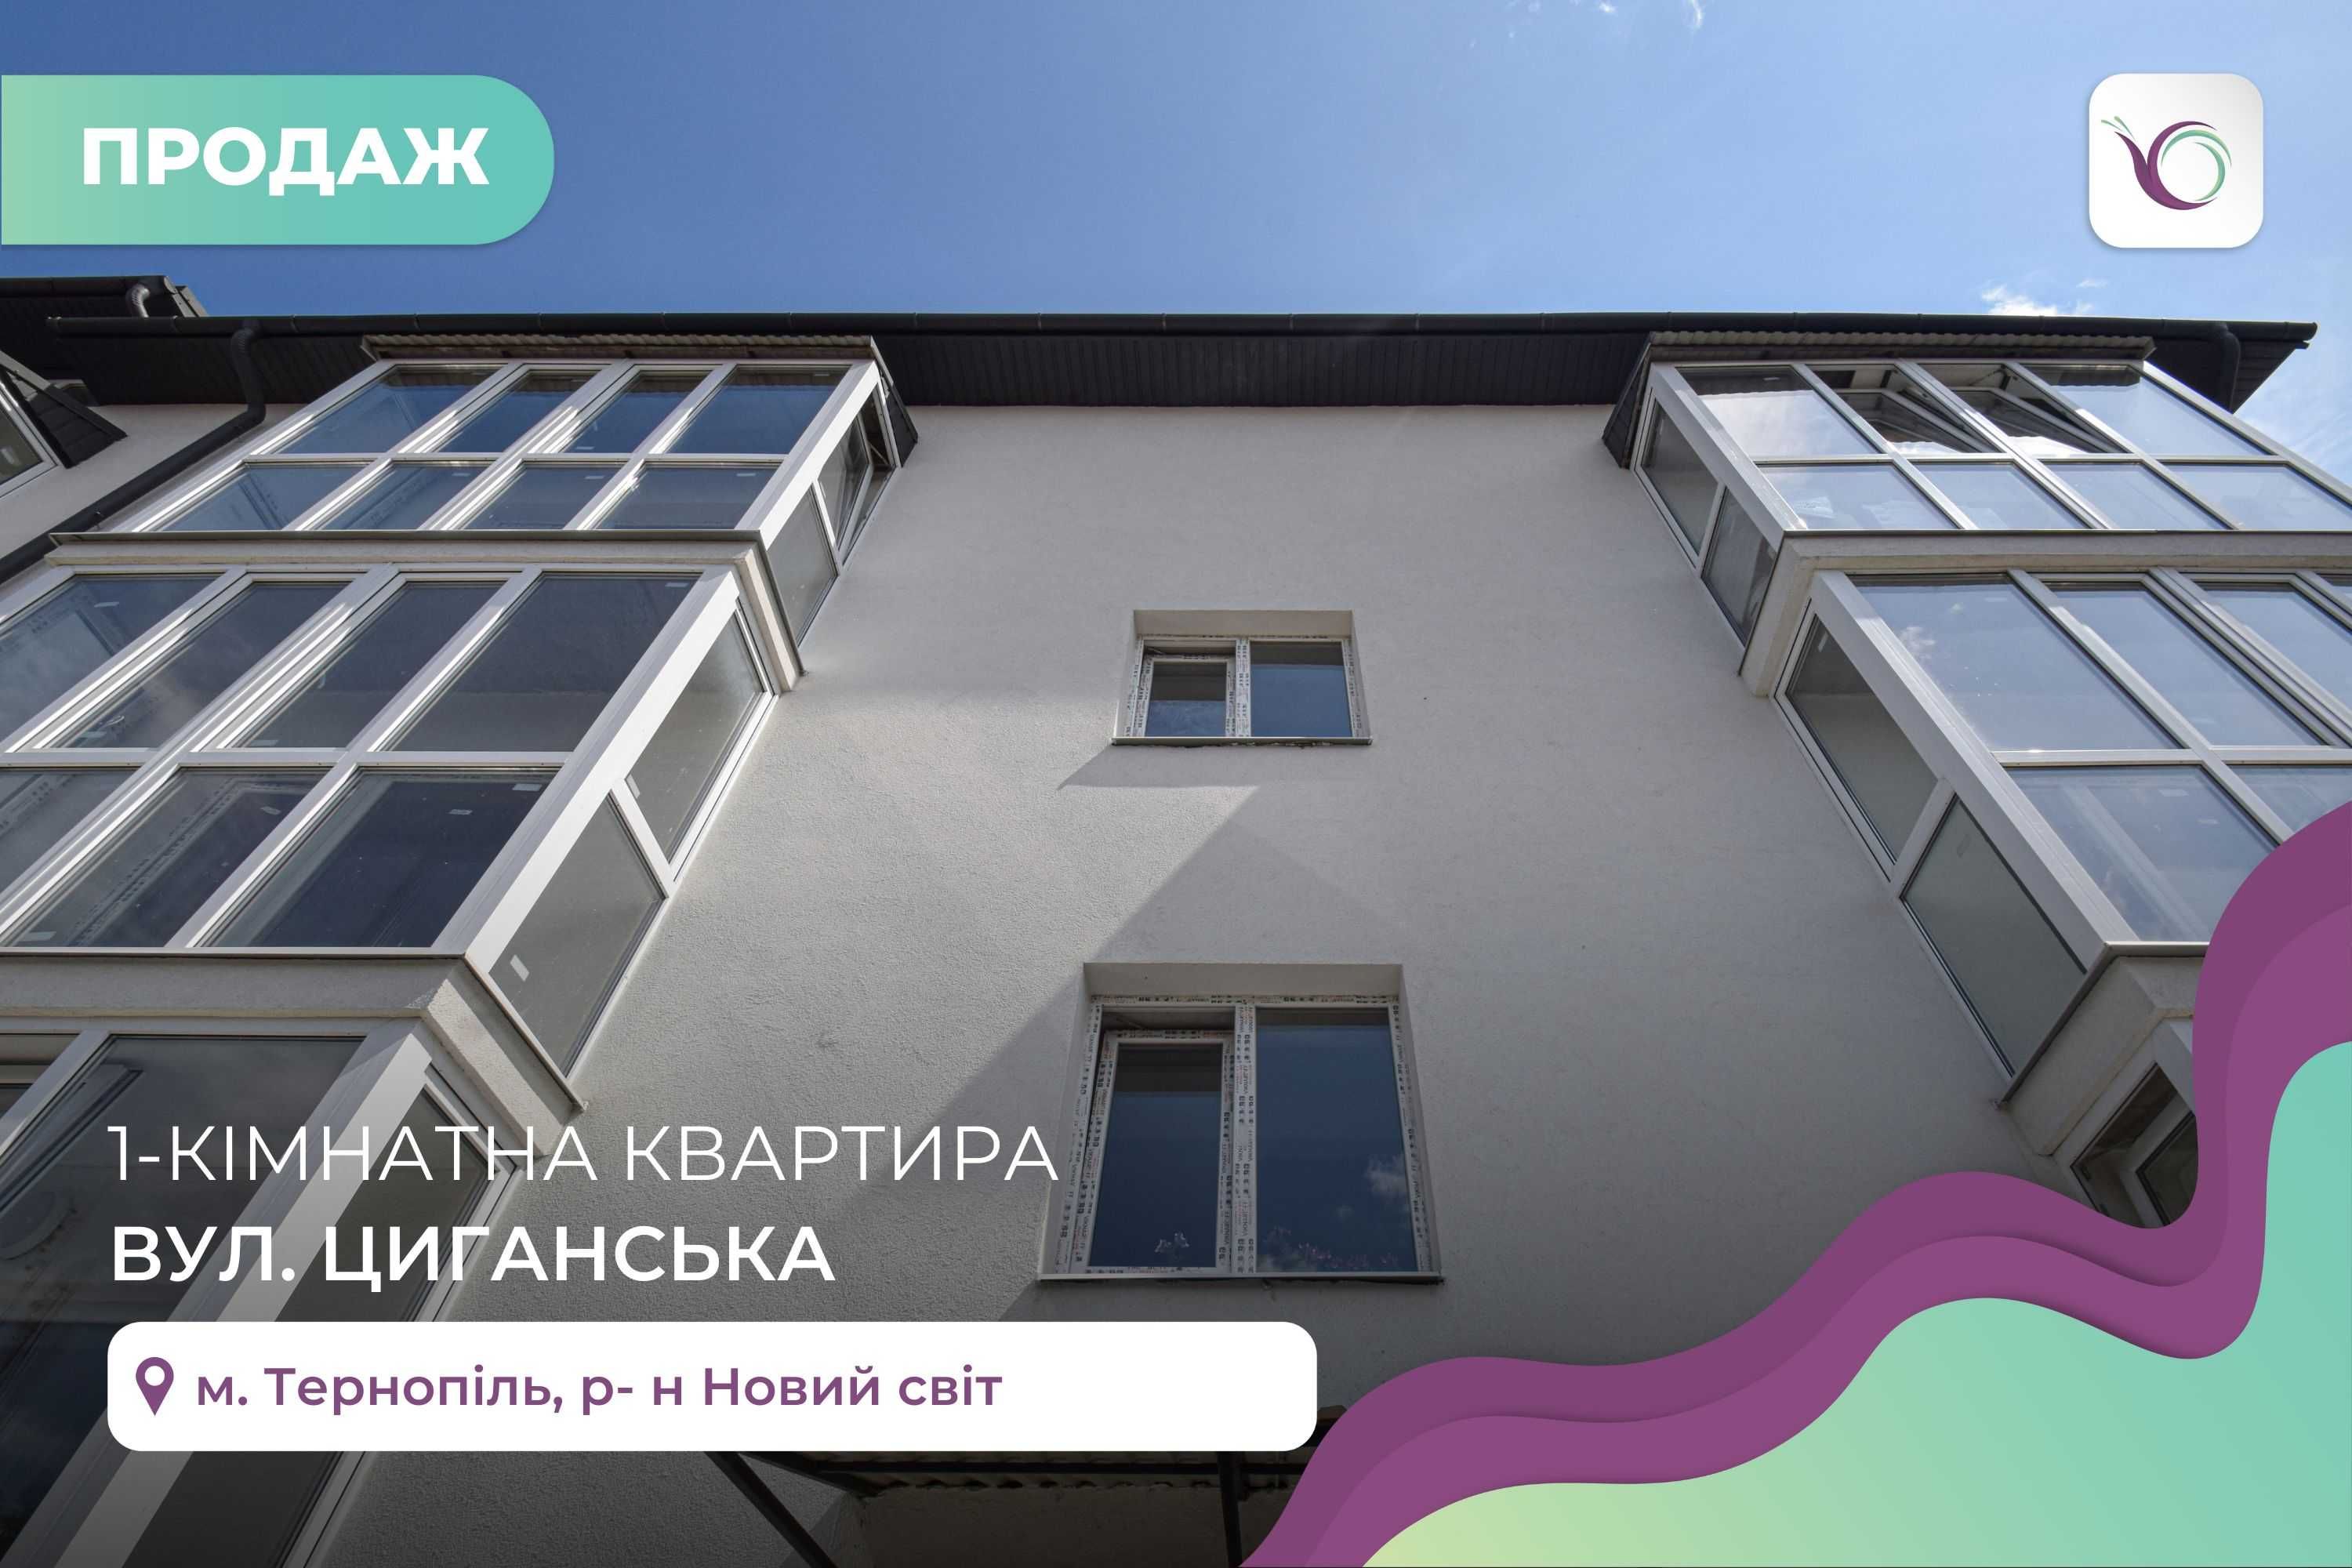 1-к. квартира 51 м2 з балконом та комунікаціями за вул. Циганська